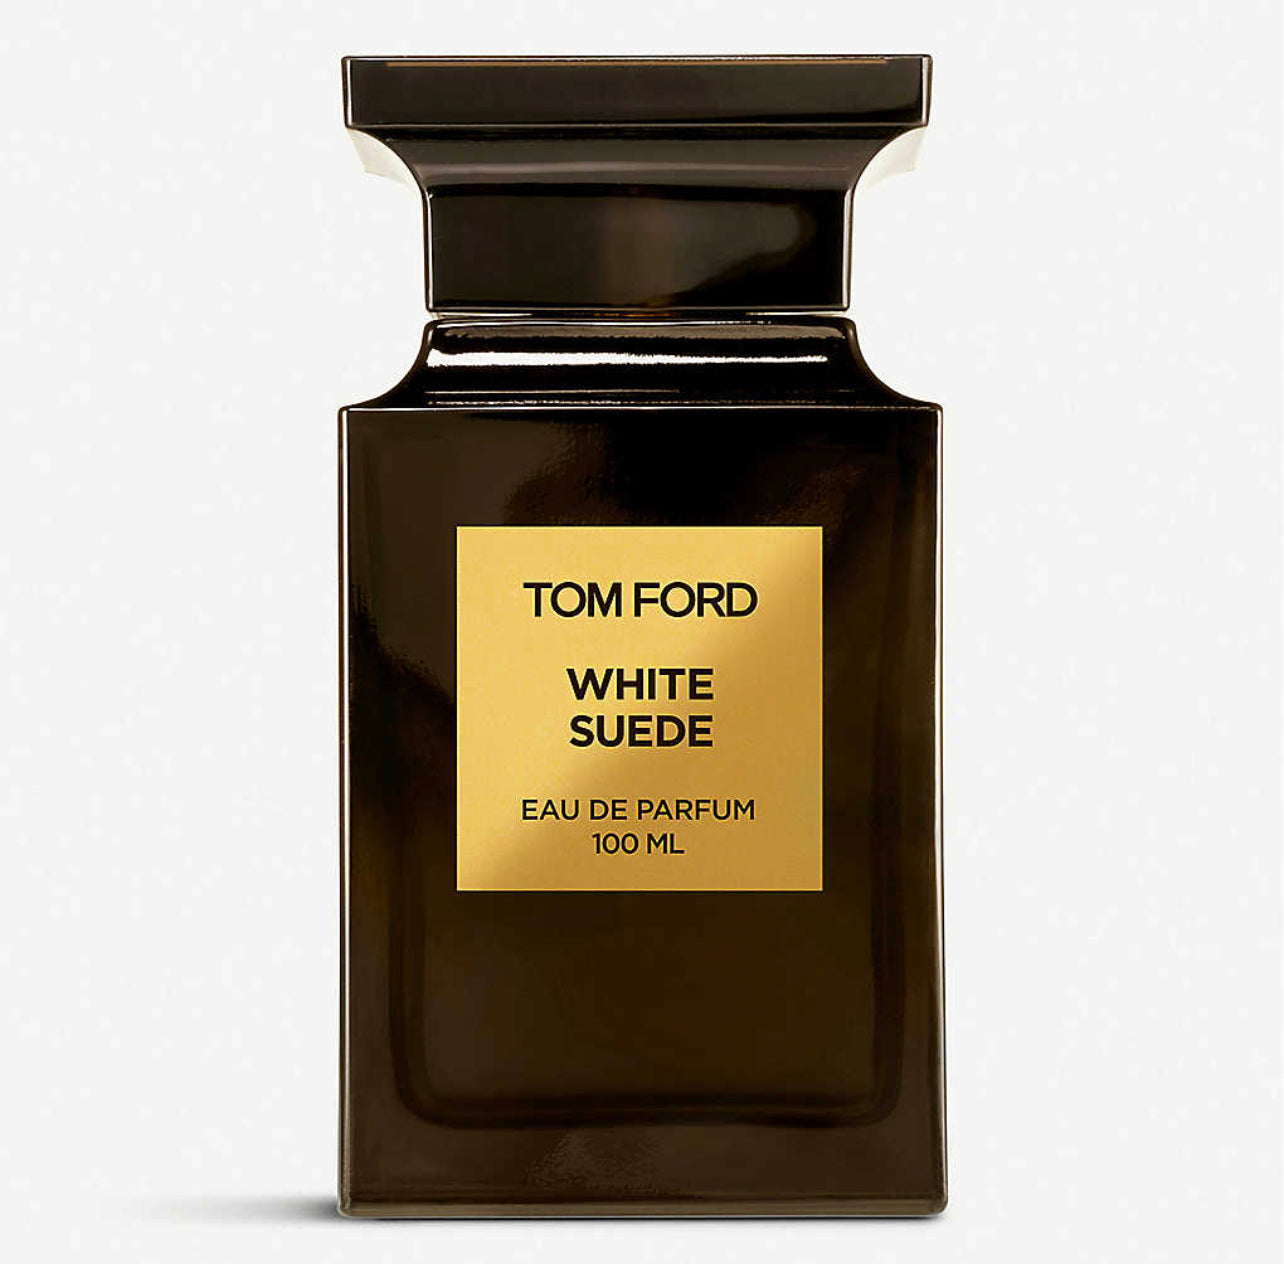 Tom Ford White Suede Eau De Parfum Samples